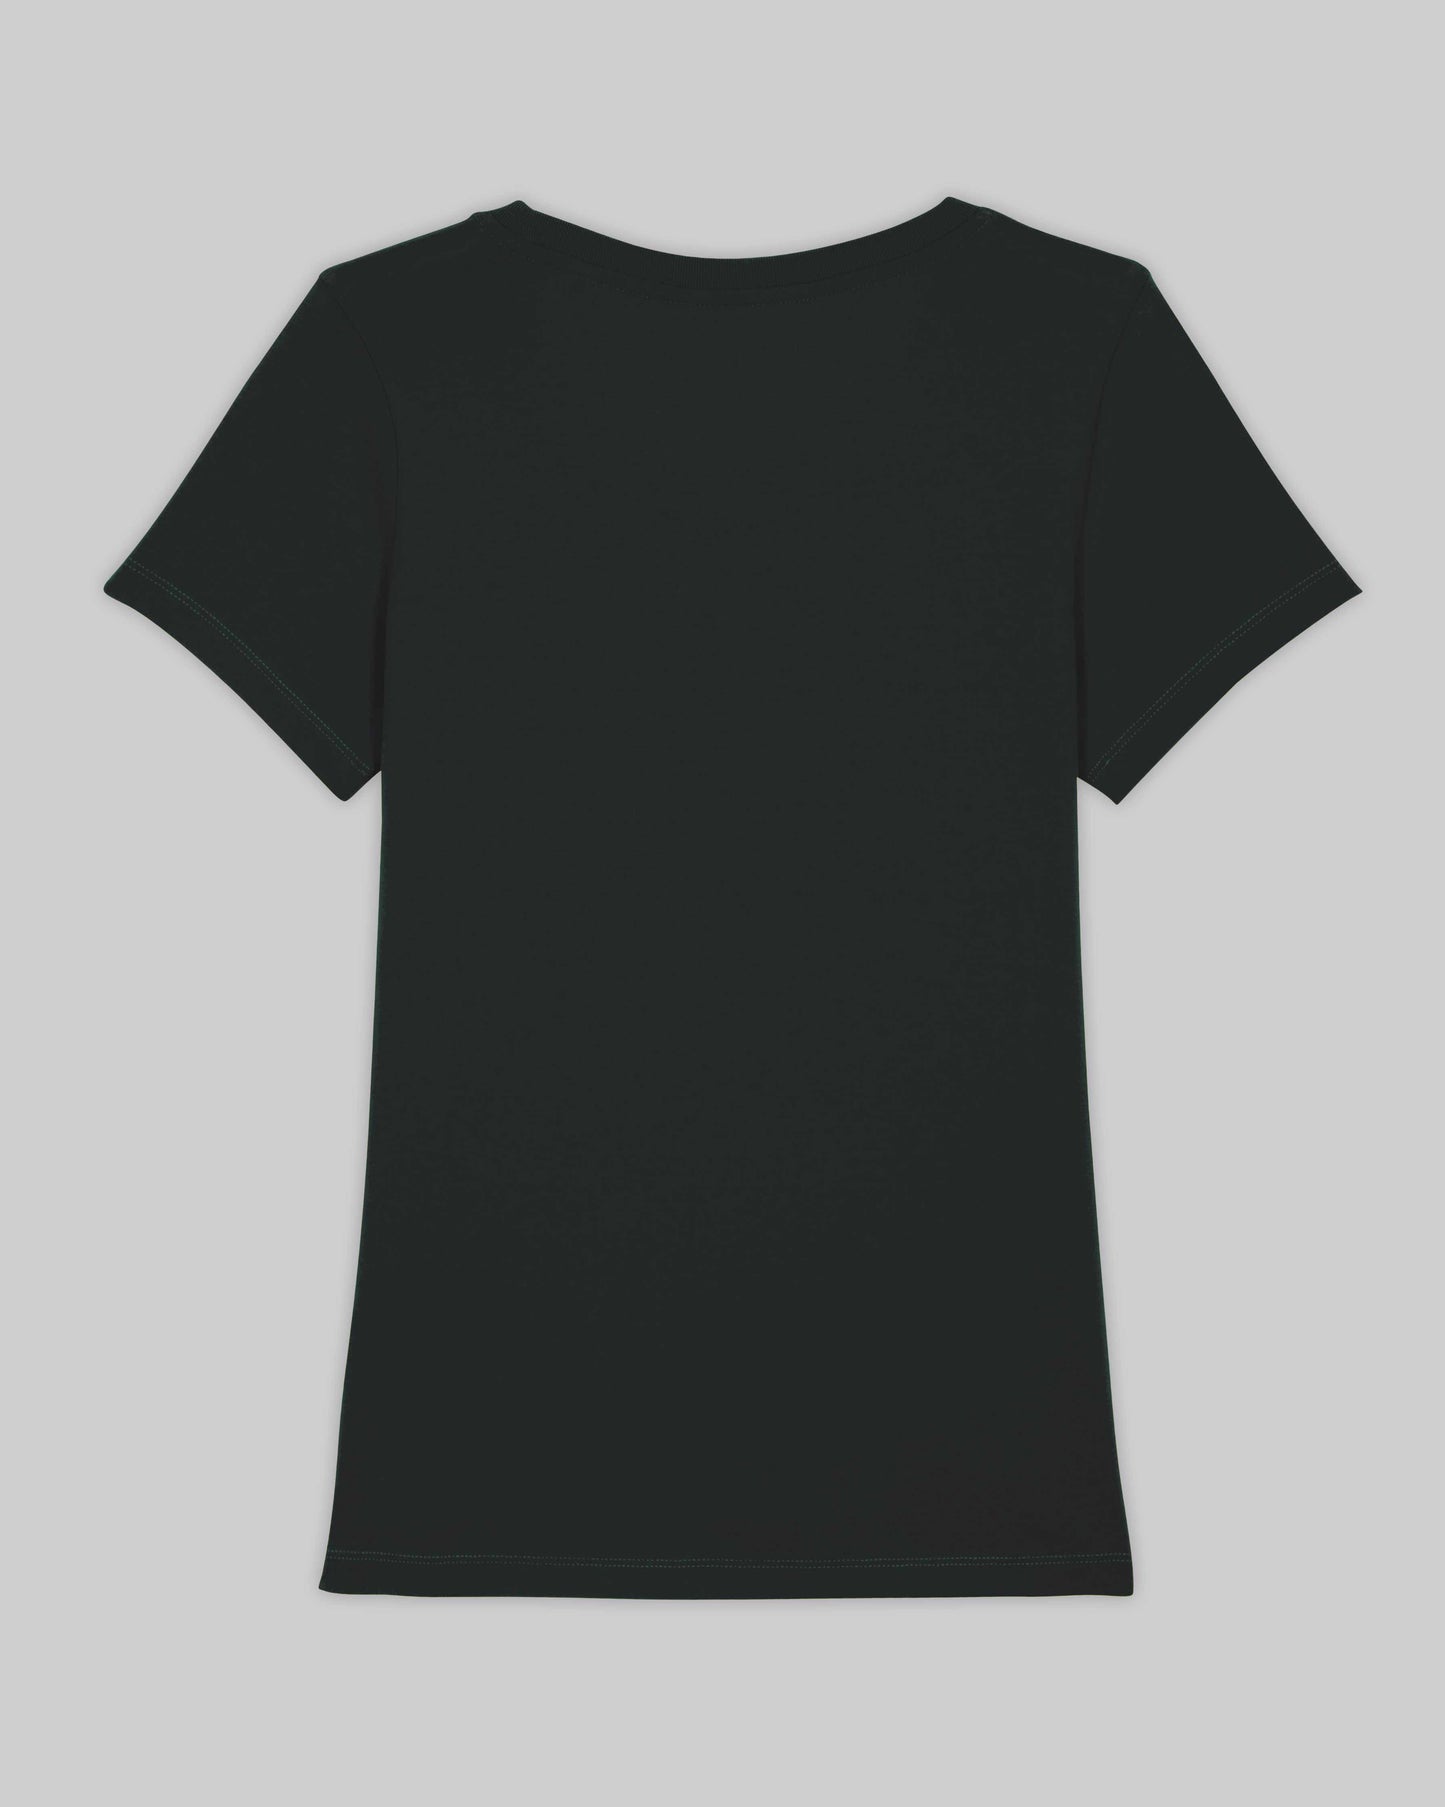 EINHORST® Organic Shirt tailliert in "Schwarz" mit dem Motiv "s-ally Regenbogen" in der Kombination weißer Regenbogen mit weißer Schrift, Bild von Shirt von hinten